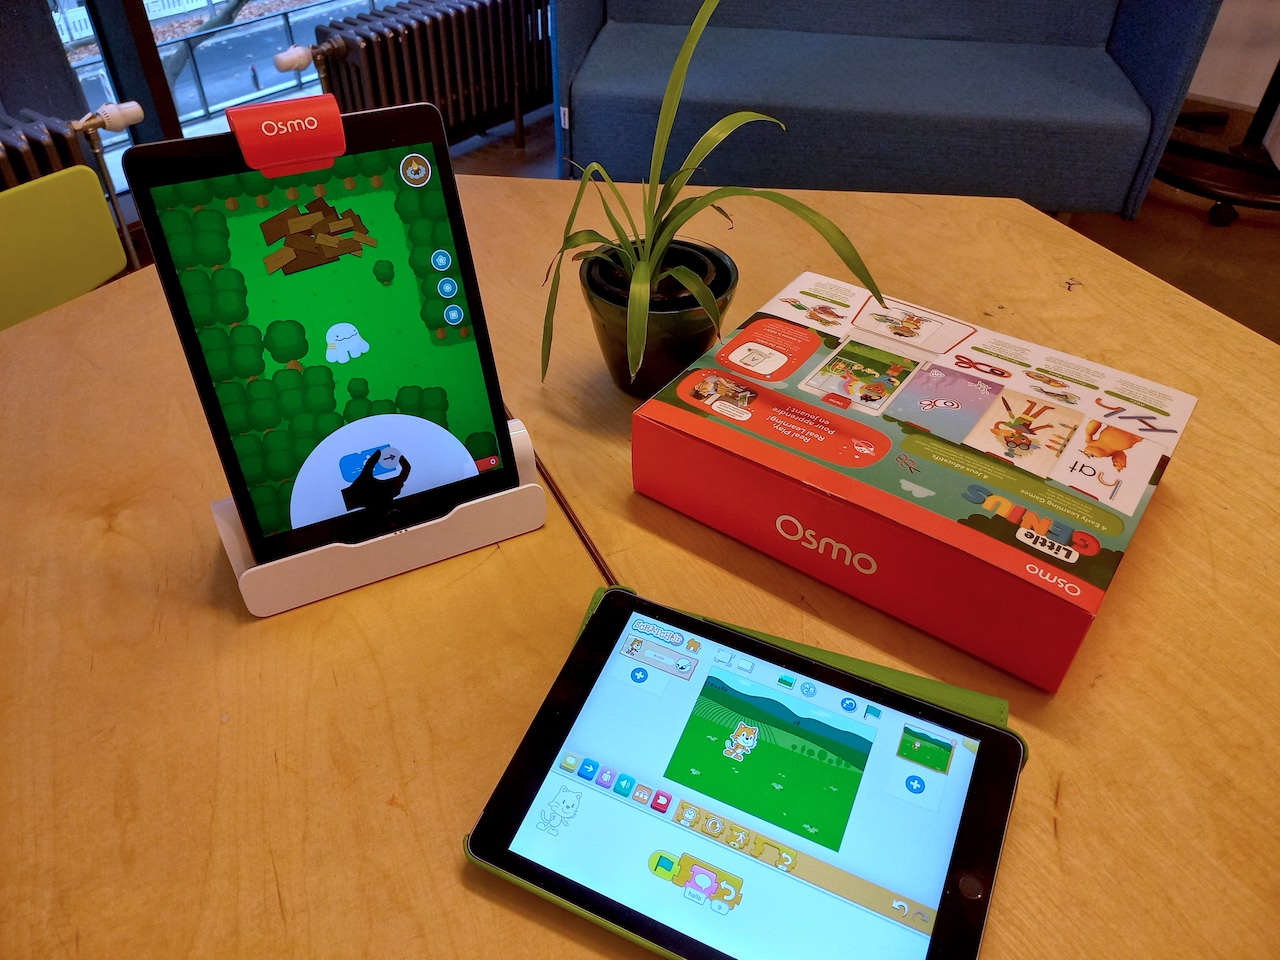 Zwei iPads zeigen die App "Osmo Blocks" und "ScratchJr"